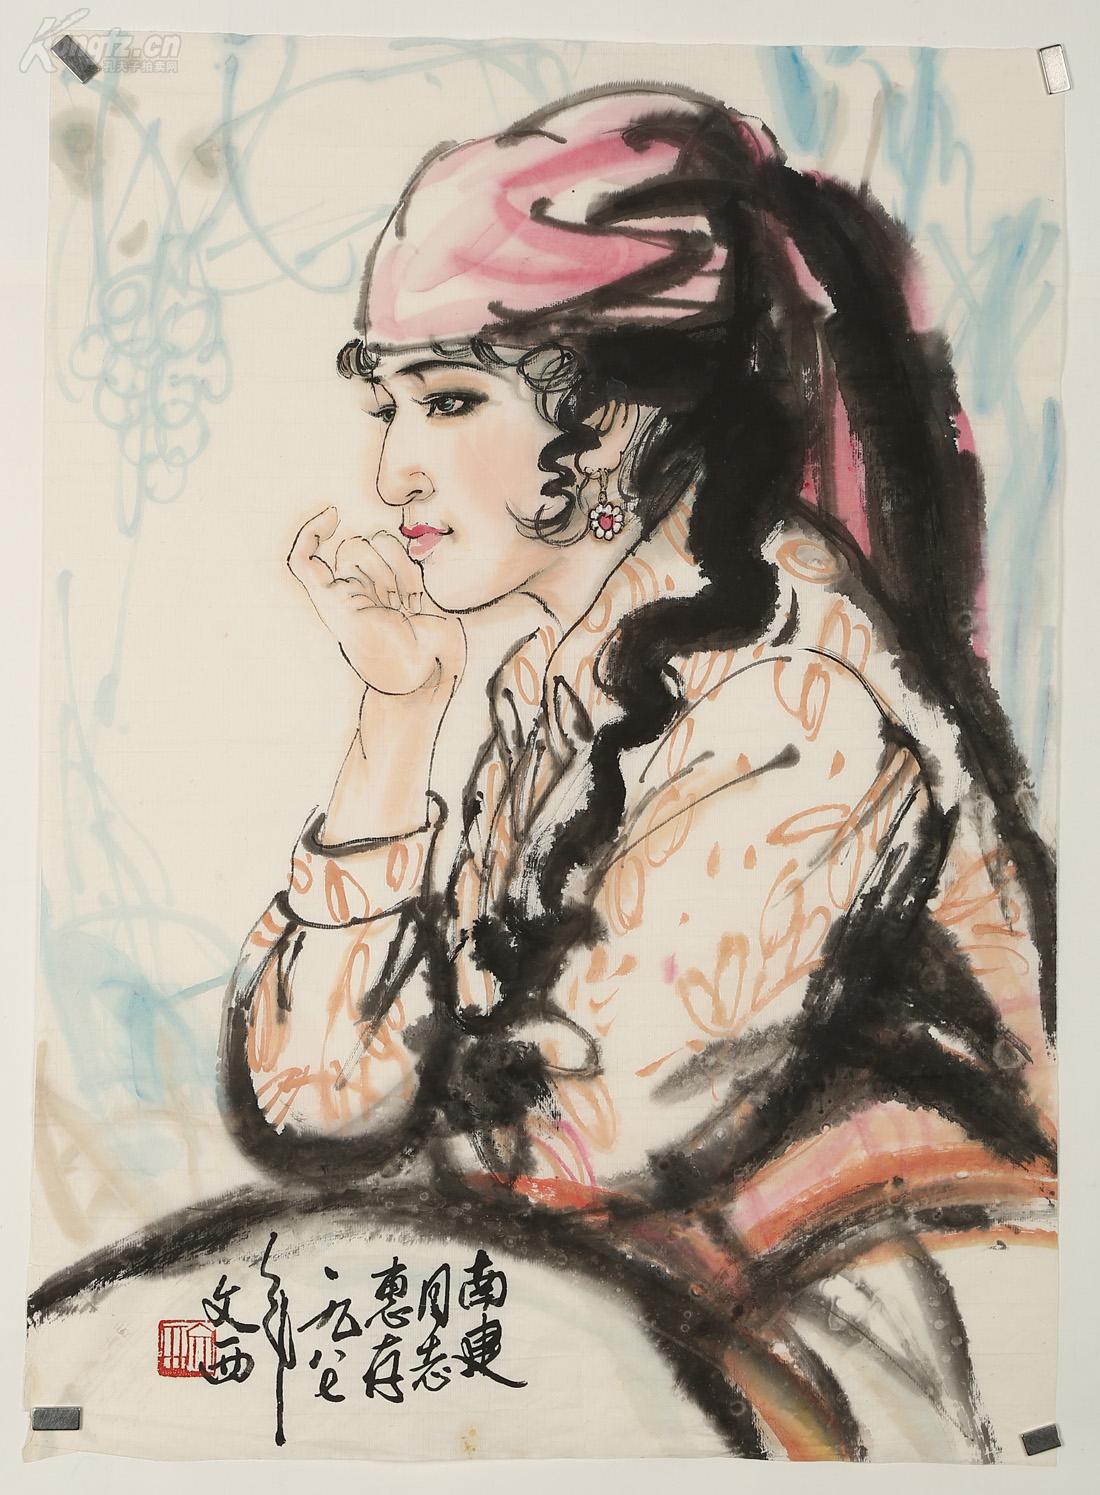 【精品推荐】刘文西,《人物》,将中国画的工笔重彩与水墨写意相结合